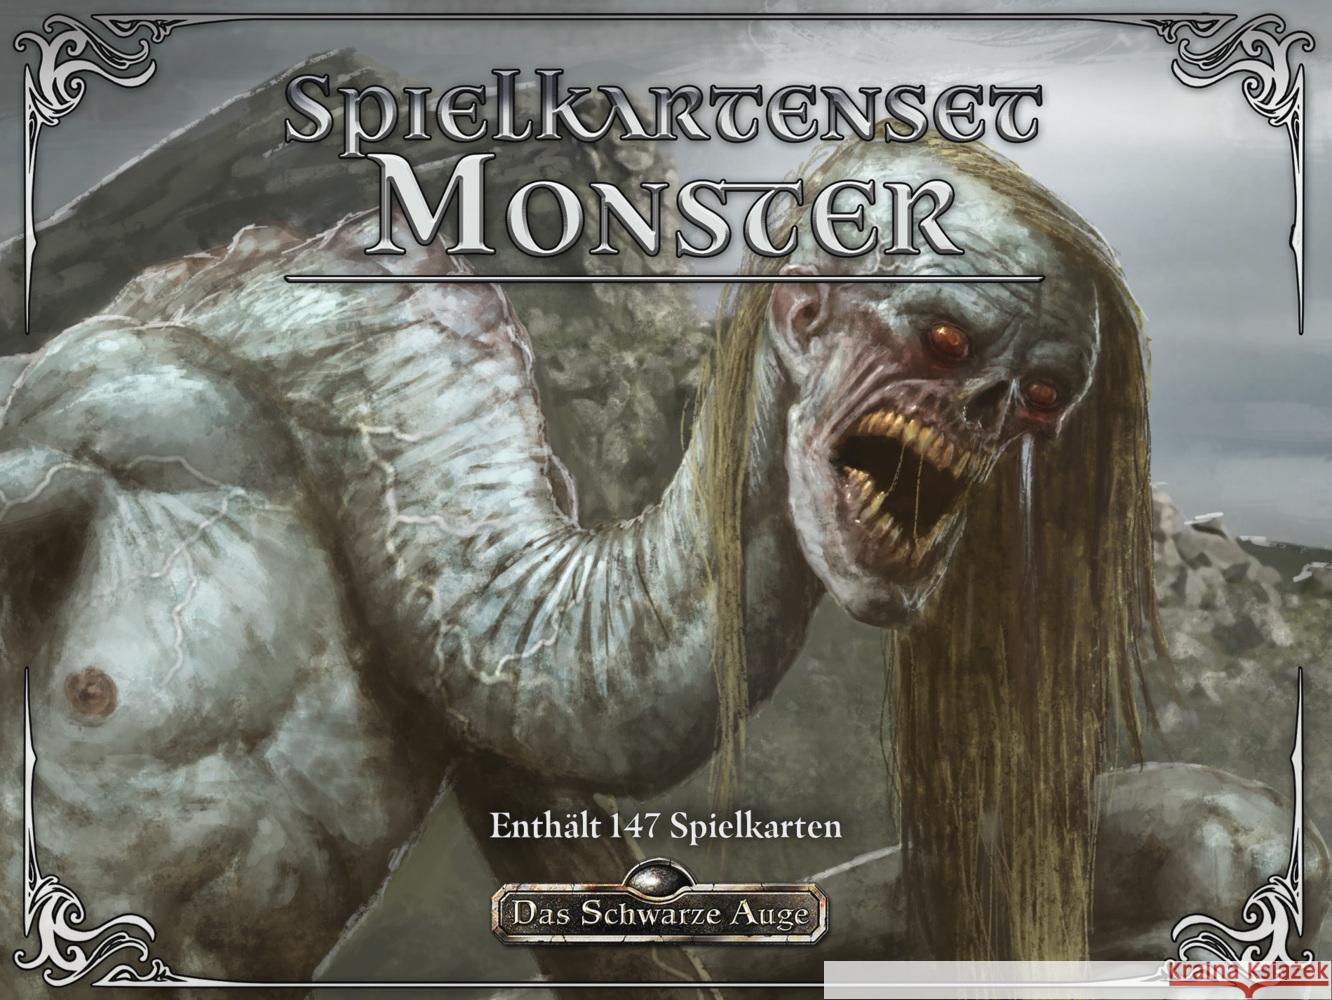 Das Schwarze Auge, DSA5 Mythos: Spielkartenset Monster Spohr, Alex 4260630771305